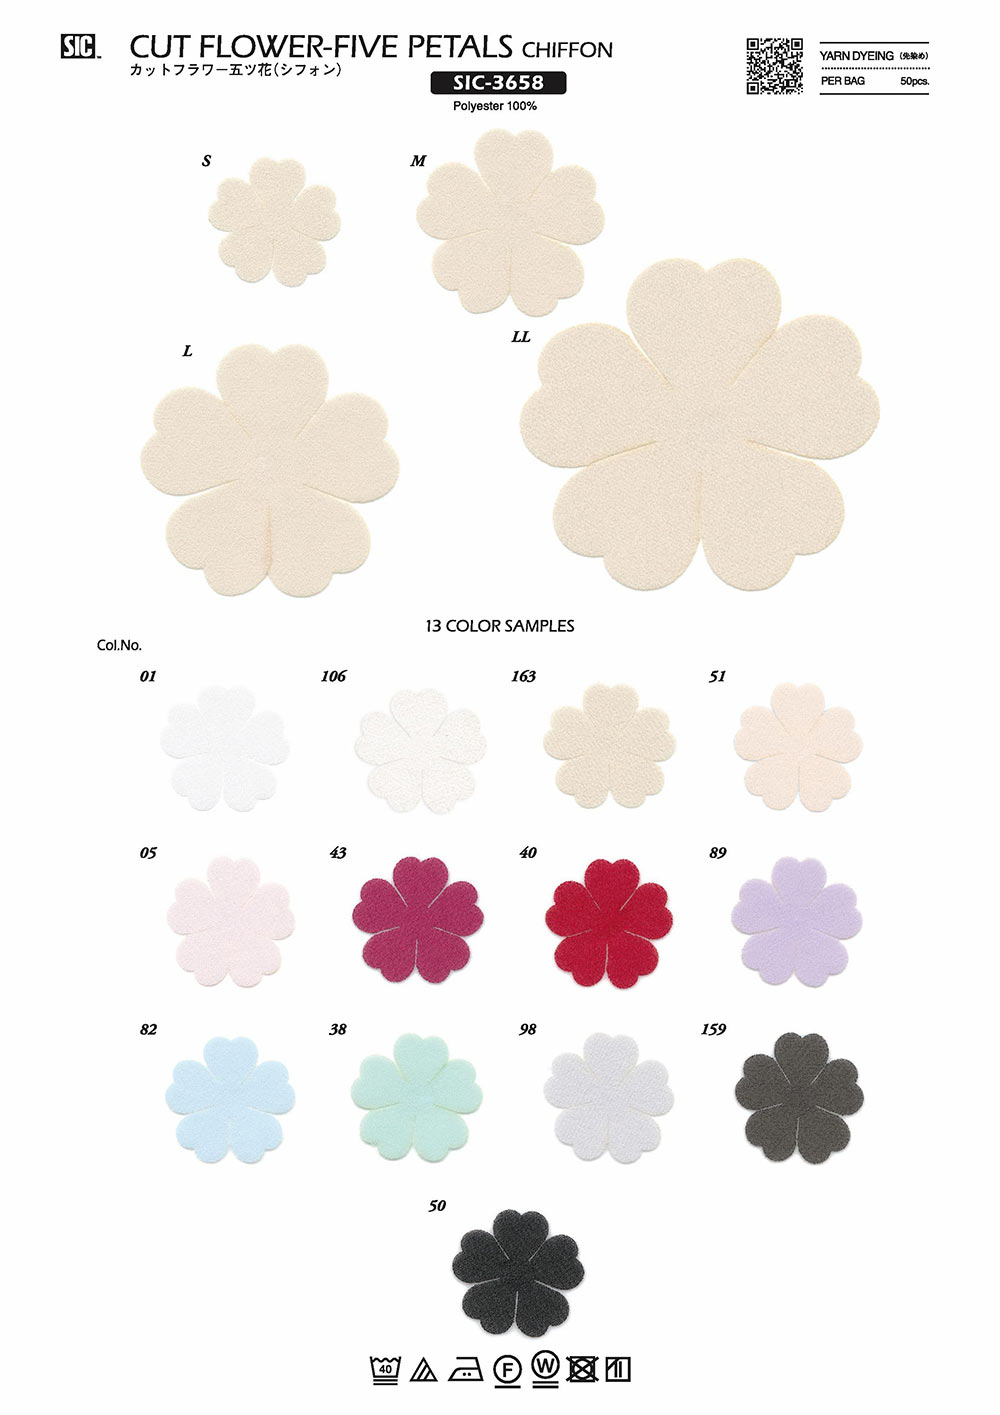 SIC-3658 Fleur Coupée Cinq Fleurs (Mousseline De Soie)[Marchandises Diverses Et Autres] SHINDO(SIC)